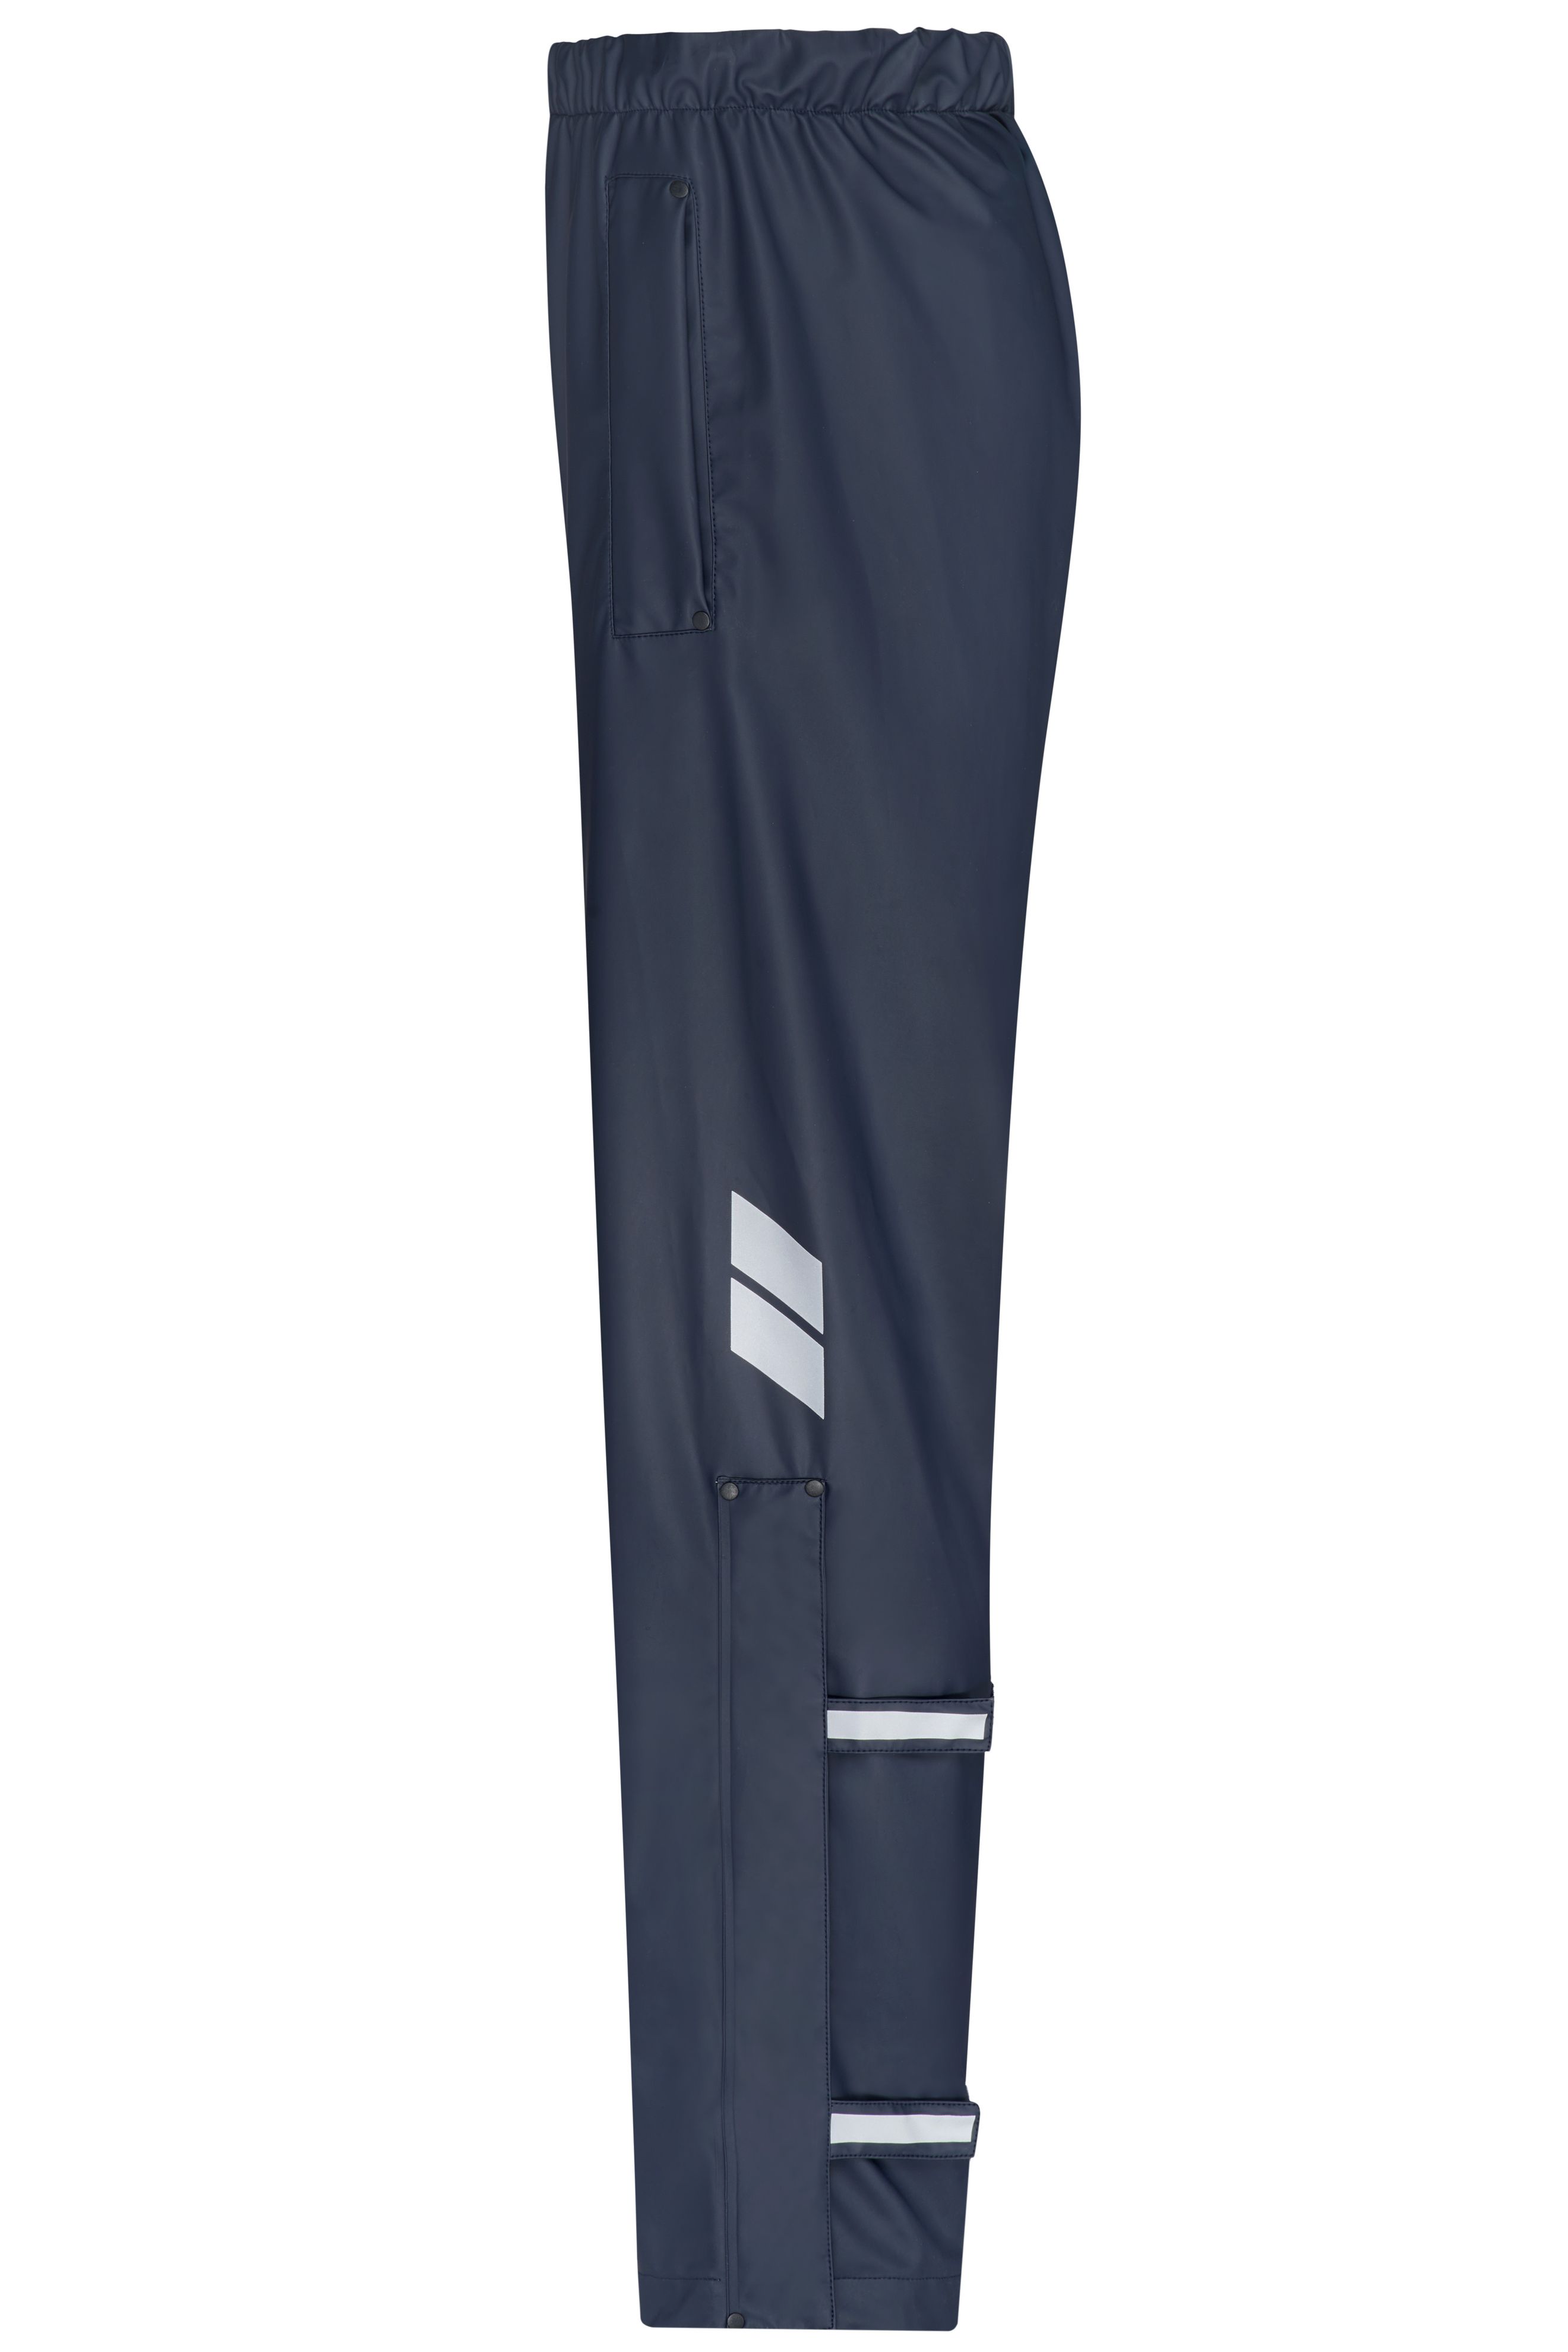 Worker Rain-Pants JN1845 Praktische Unisex- Regenhose zum Überziehen, vielseitig einsetzbar